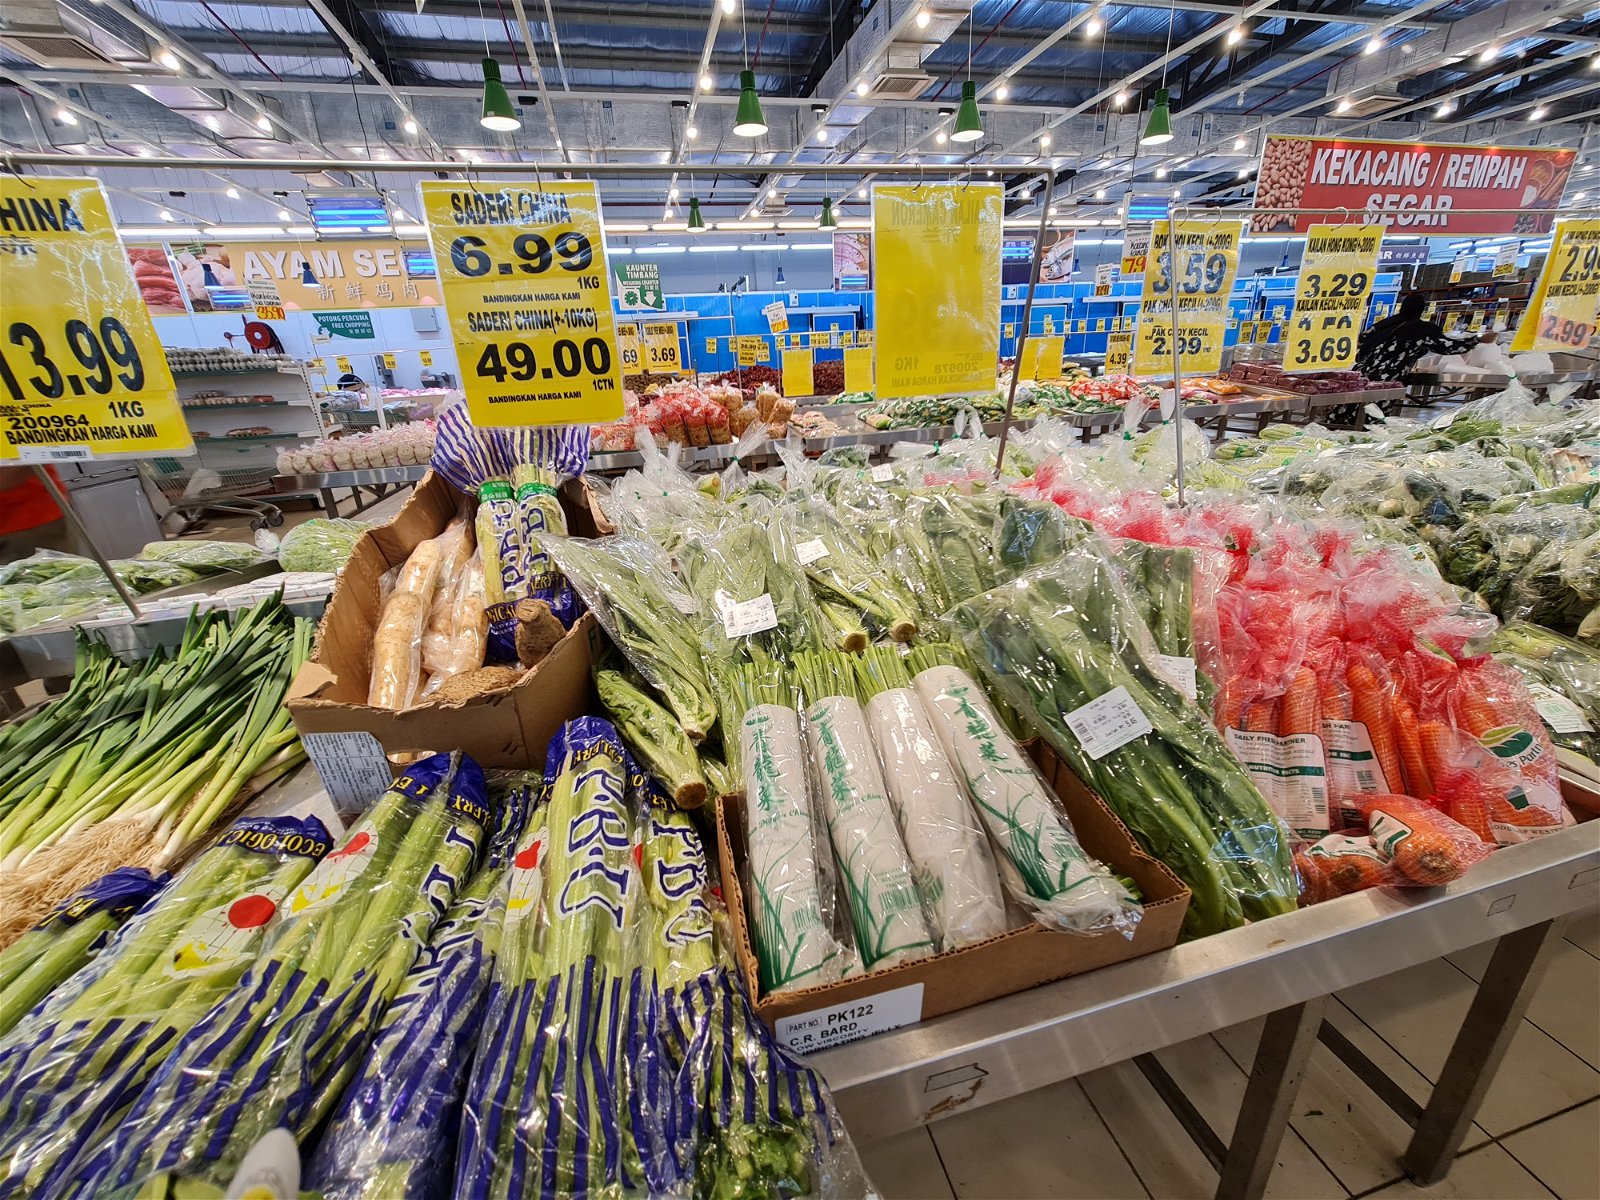 进口蔬菜货柜抵达后，会尽可能在一天内把新鲜蔬菜分配和运送至其他分店。